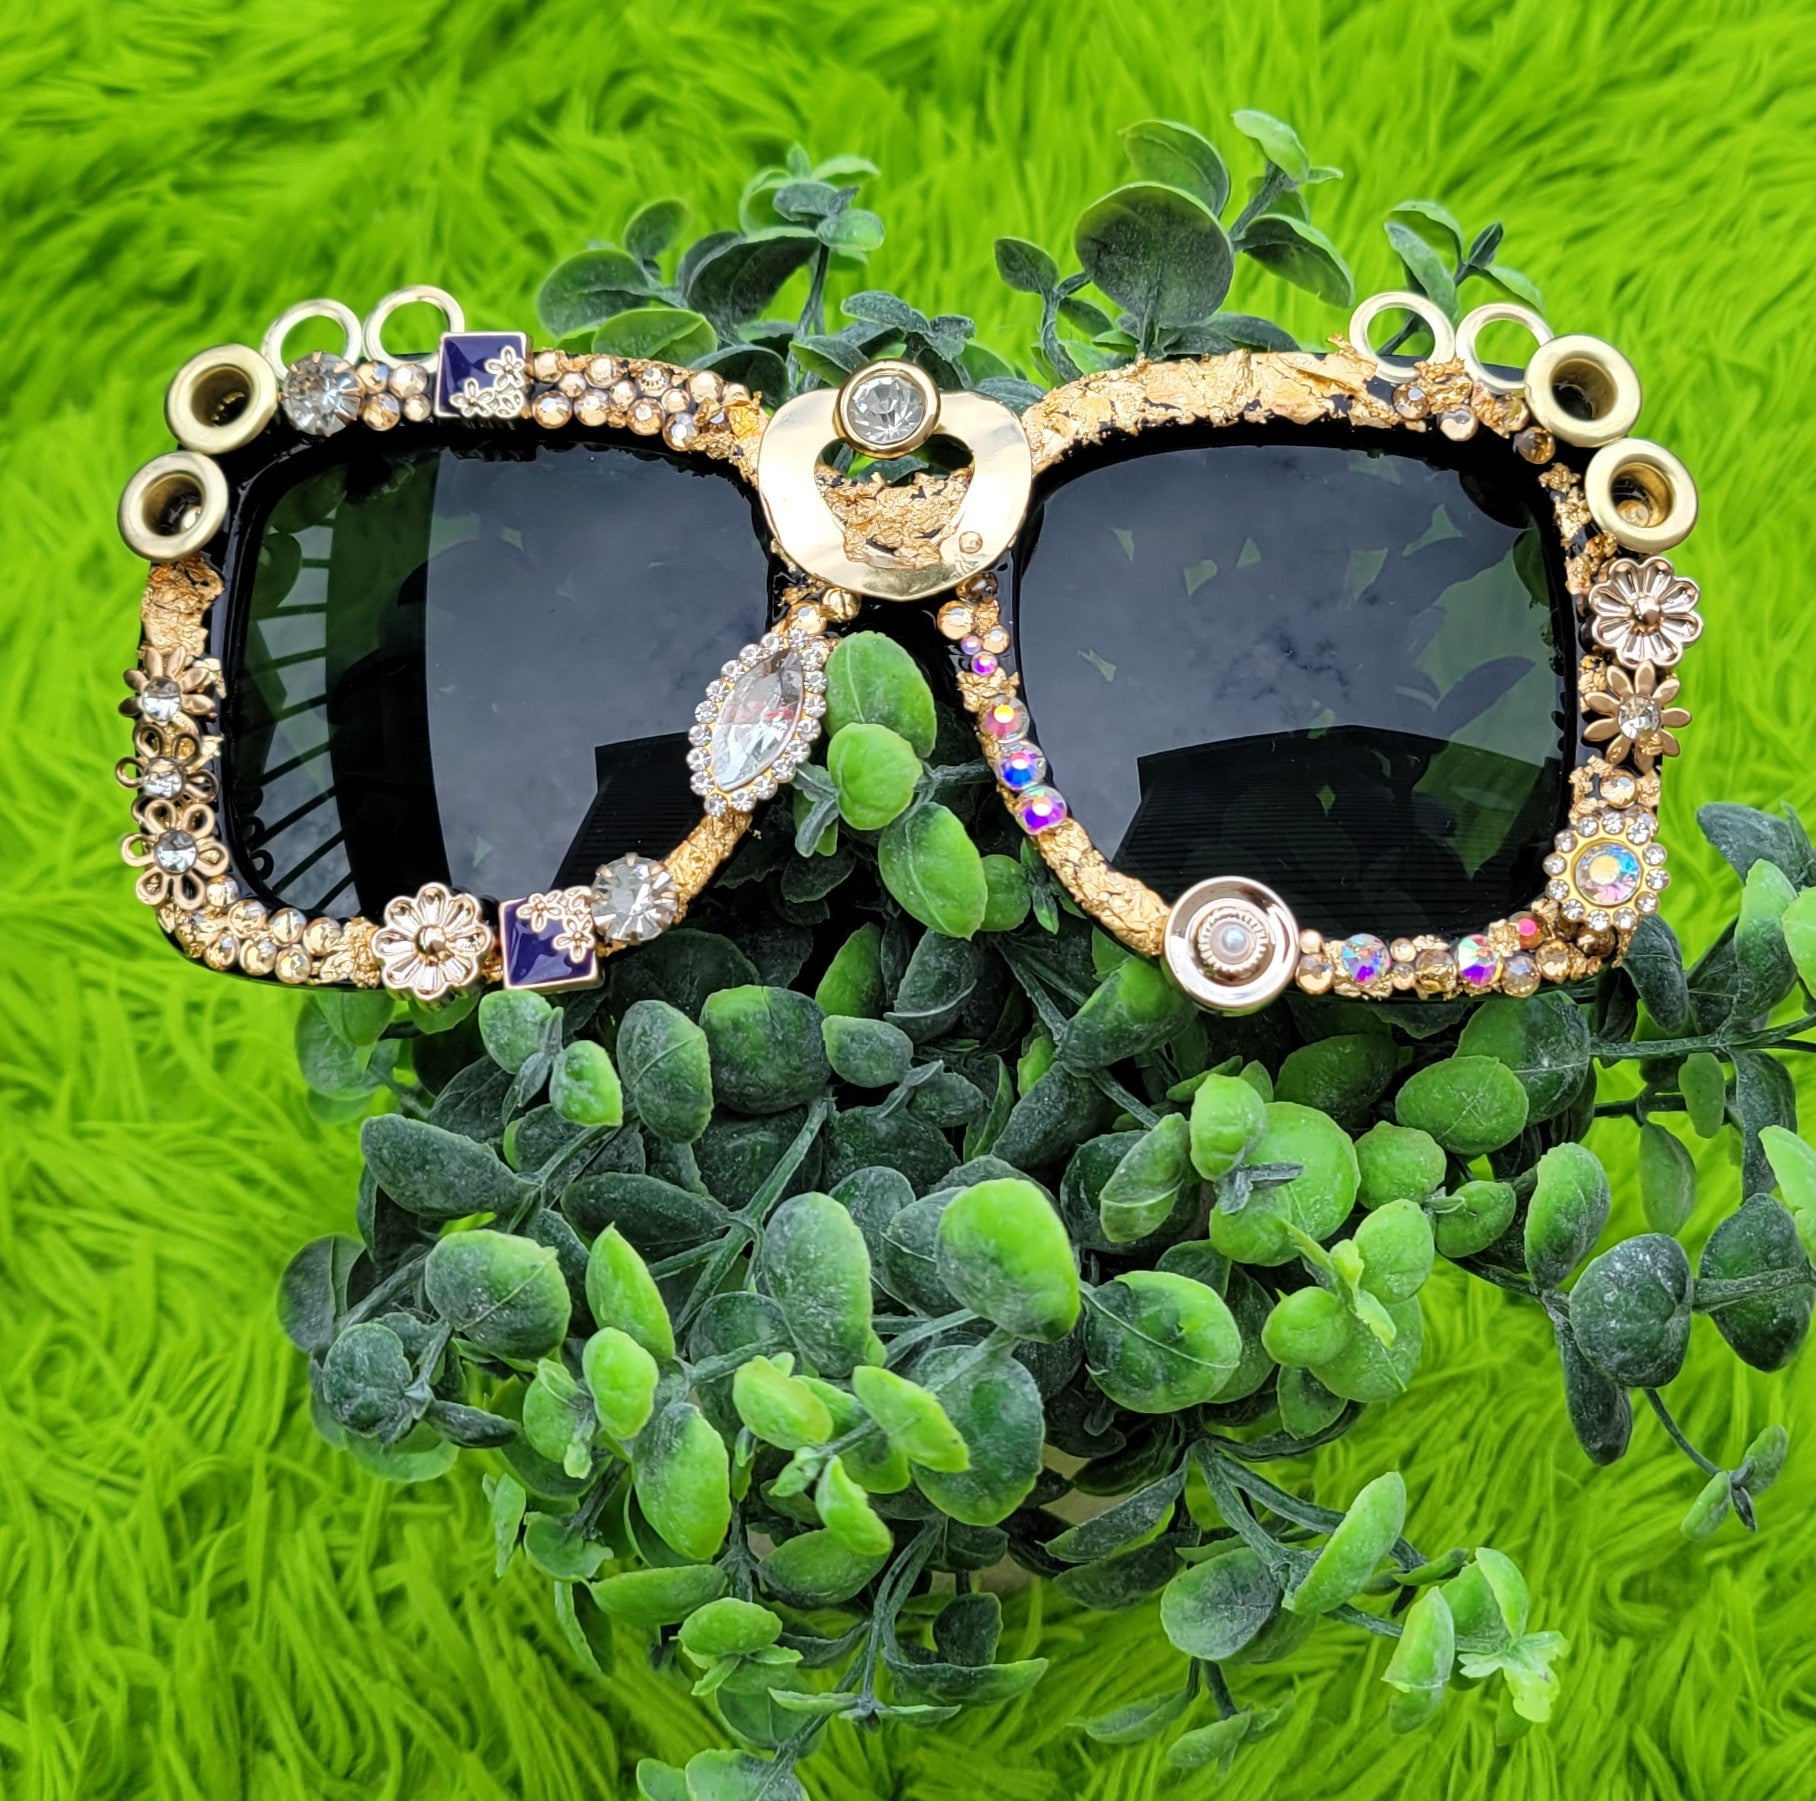 Badazzled Sunglasses – Polarized UV Protection for Women and Men's  Designer Fashion Eyewear